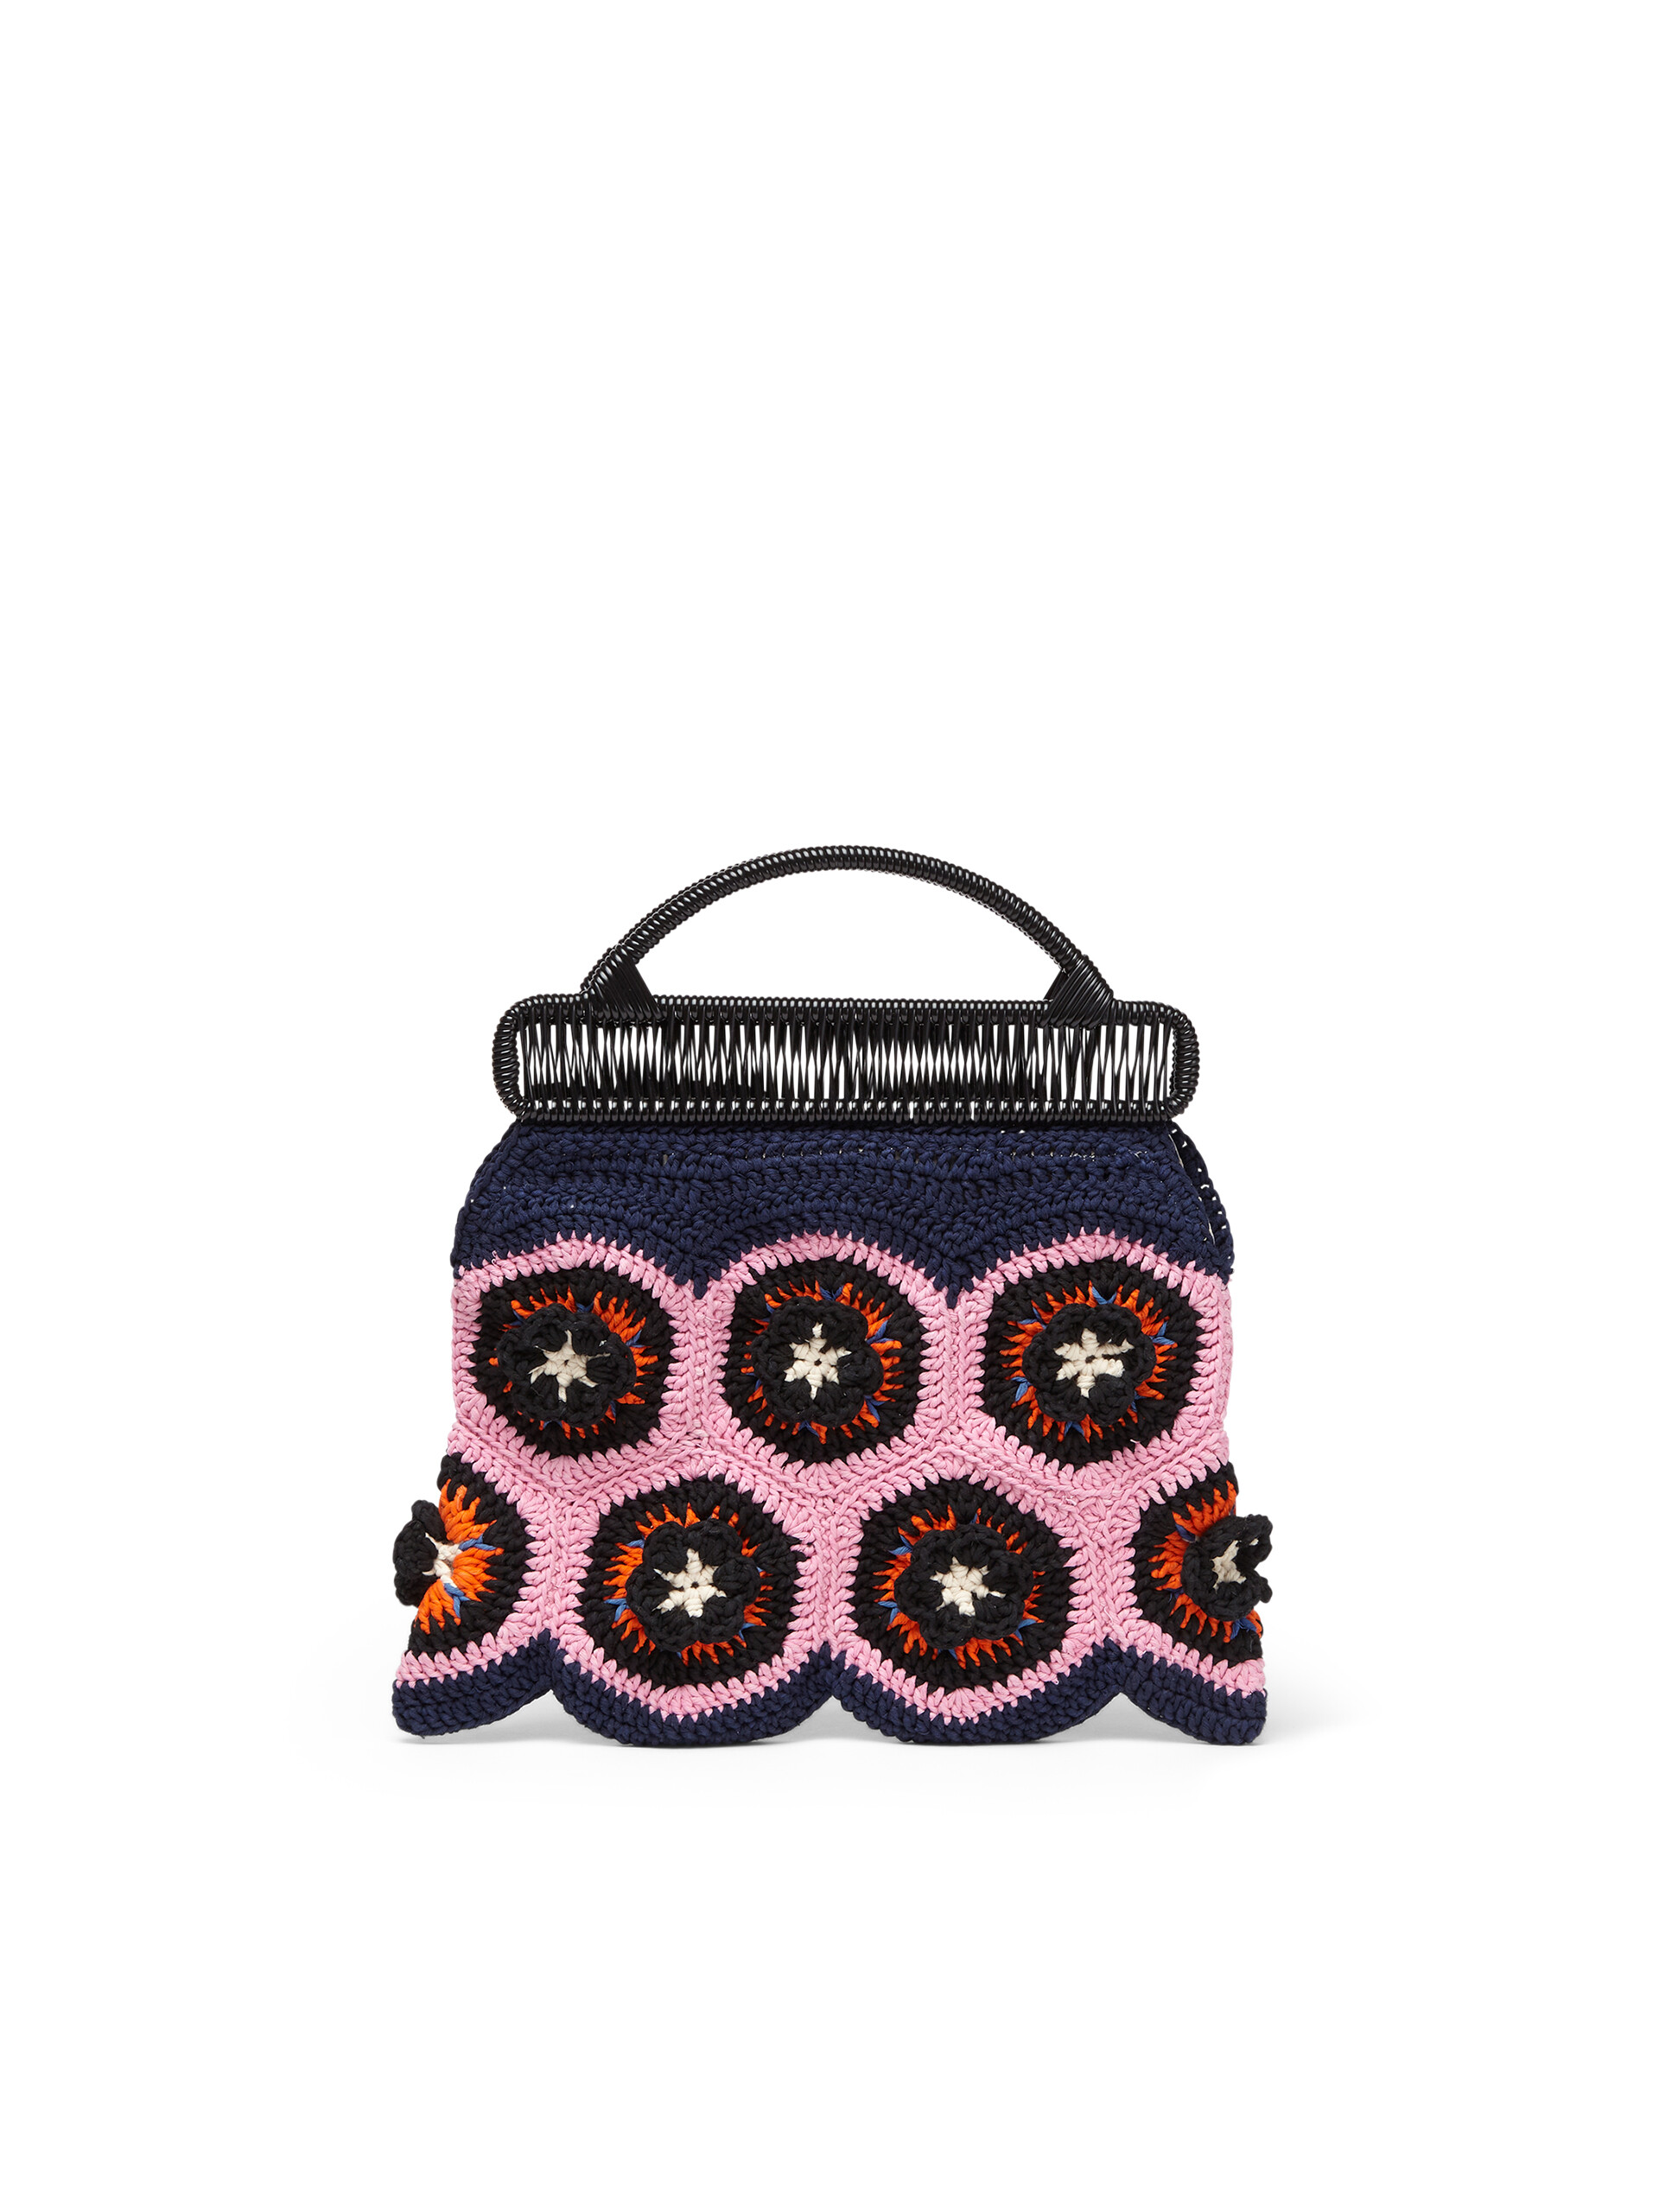 Borsa cerniera MARNI MARKET con motivo floreale in cotone crochet rosa e blu - Arredamento - Image 3